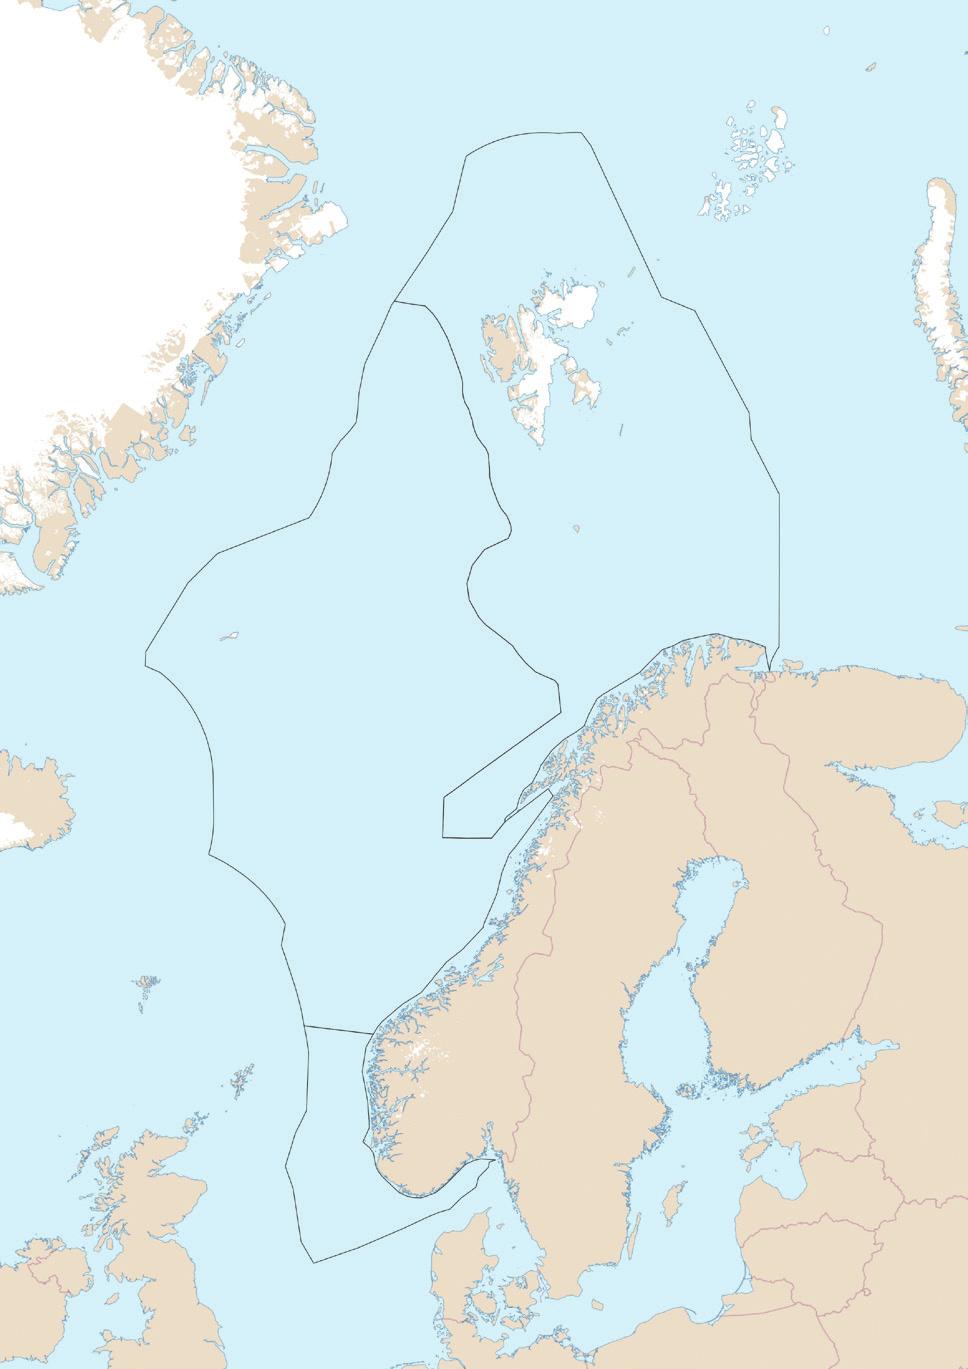 Denne rapporten er en sammenfatning av det faglige grunnlaget for revisjon og oppdatering av forvaltningsplanene for norske havområder (figur 1.1).